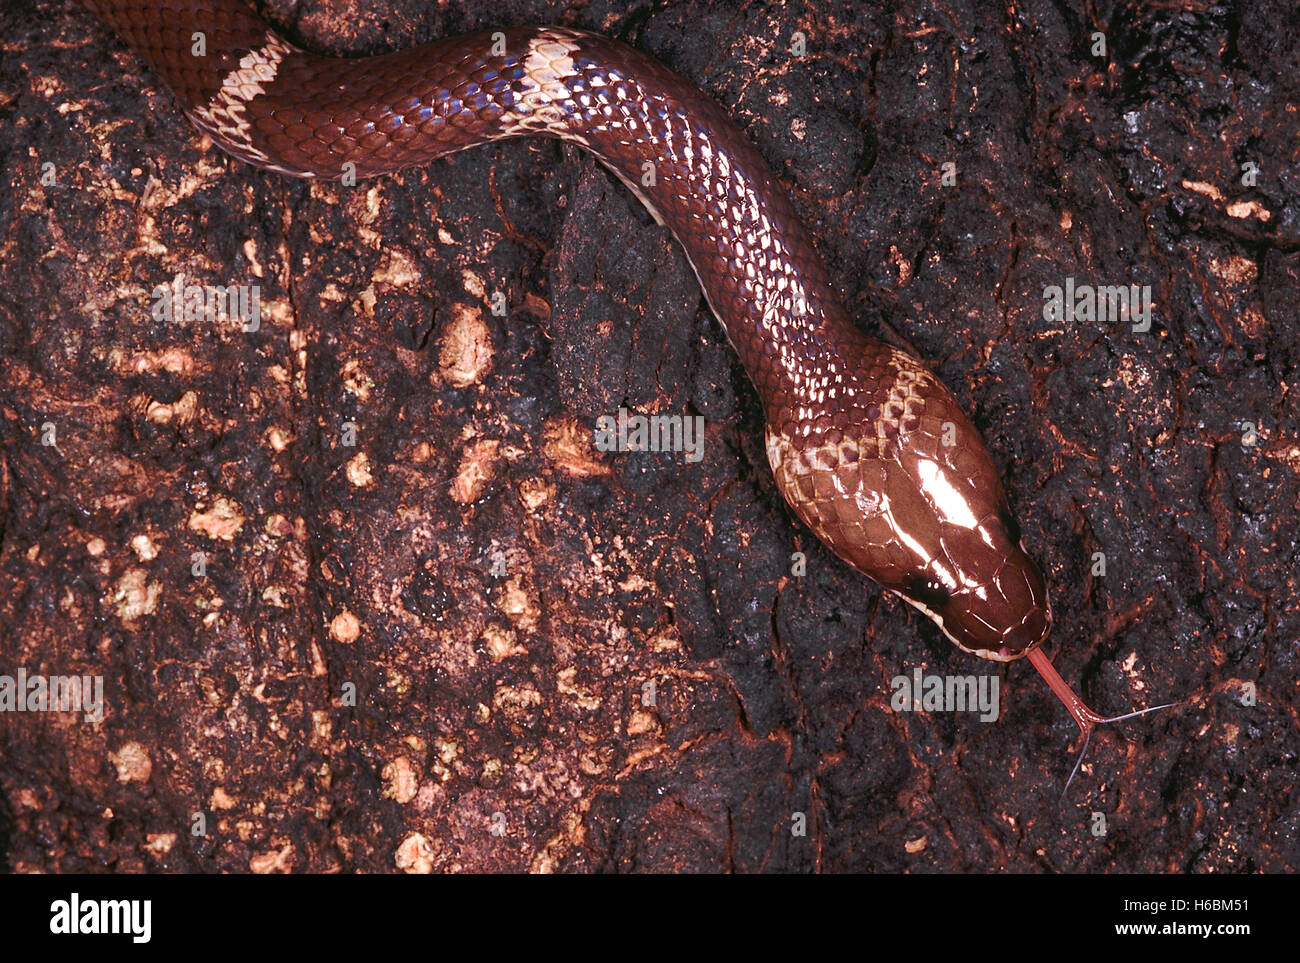 Oligodon Taeniolatus. Russell's ou Kukri panaché serpent. Un serpent qui est plutôt docile et timide. Banque D'Images